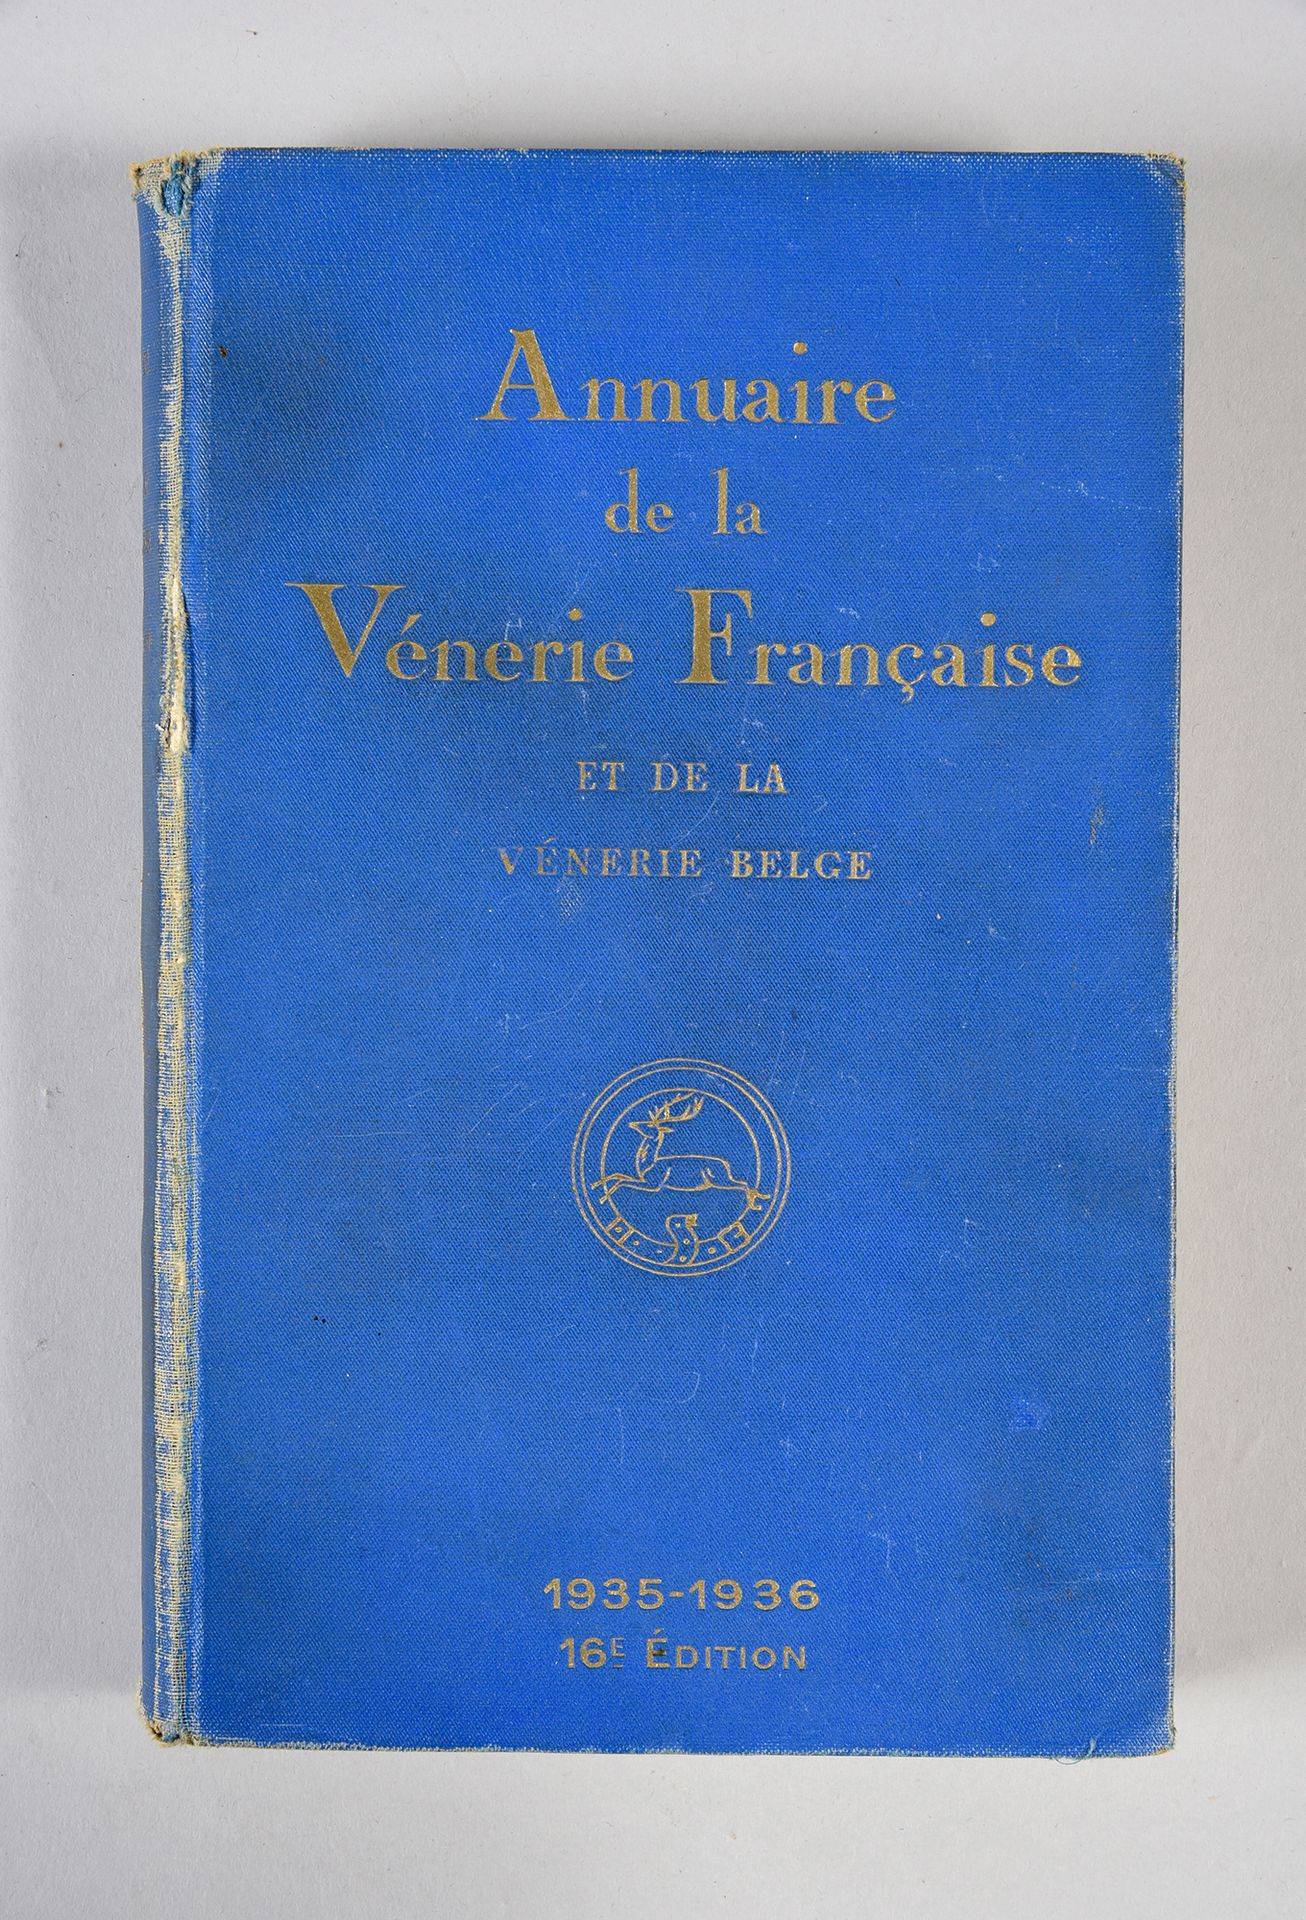 Null Annuaire de la vénerie française: Year 1935-1936.